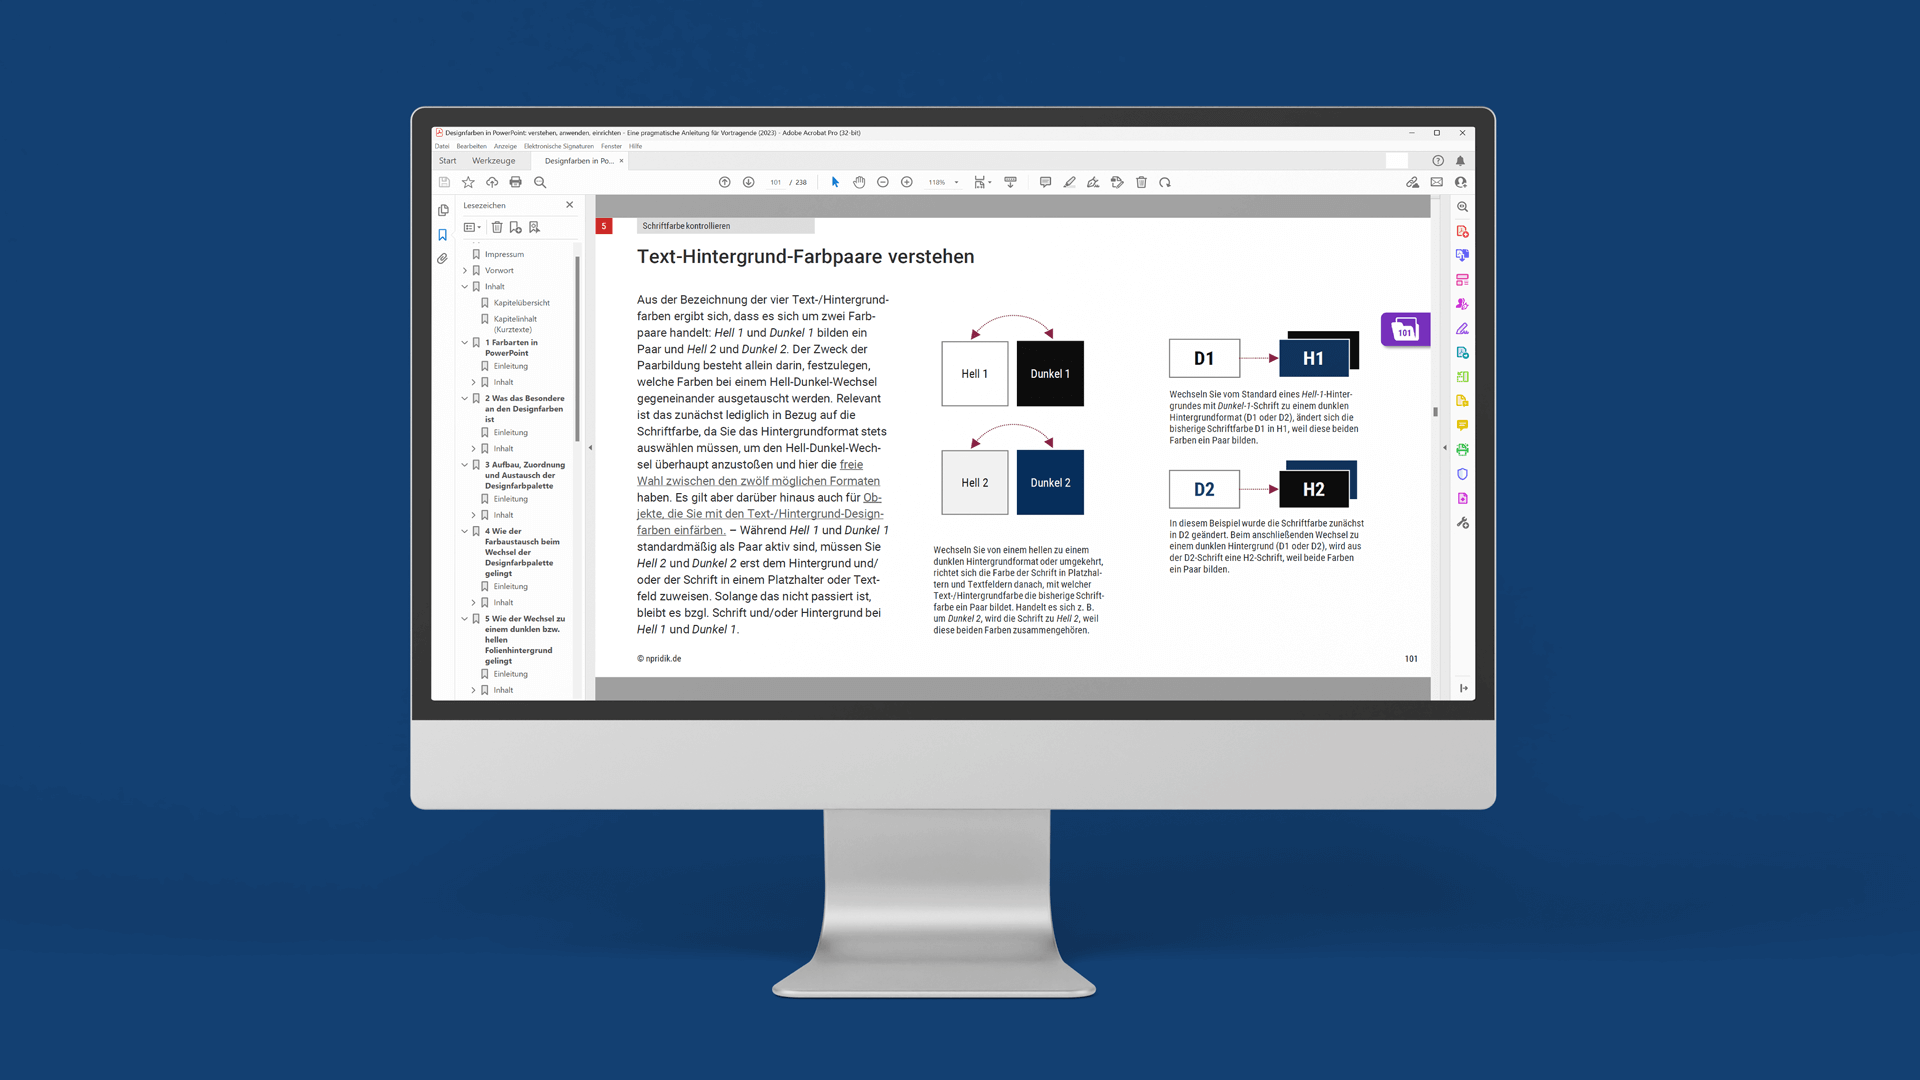 Eingeblendet ist das geöffnete PDF-Dokument im Adobe Reader, der in einer Seitenleiste die Lesezeichen darstellt